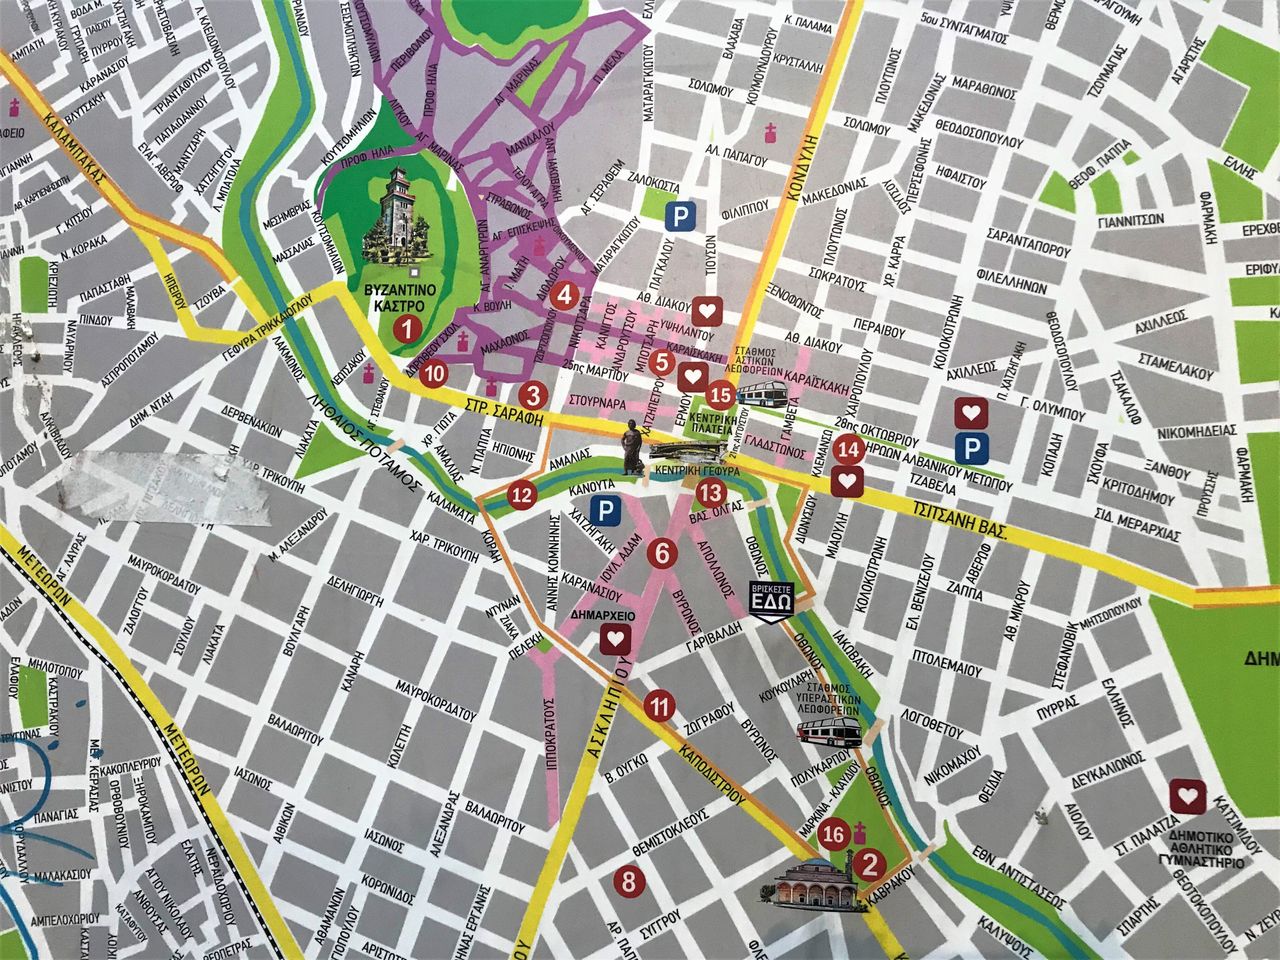 Σχεδιάγραμμα με τα αξιοθέατα της πόλης.